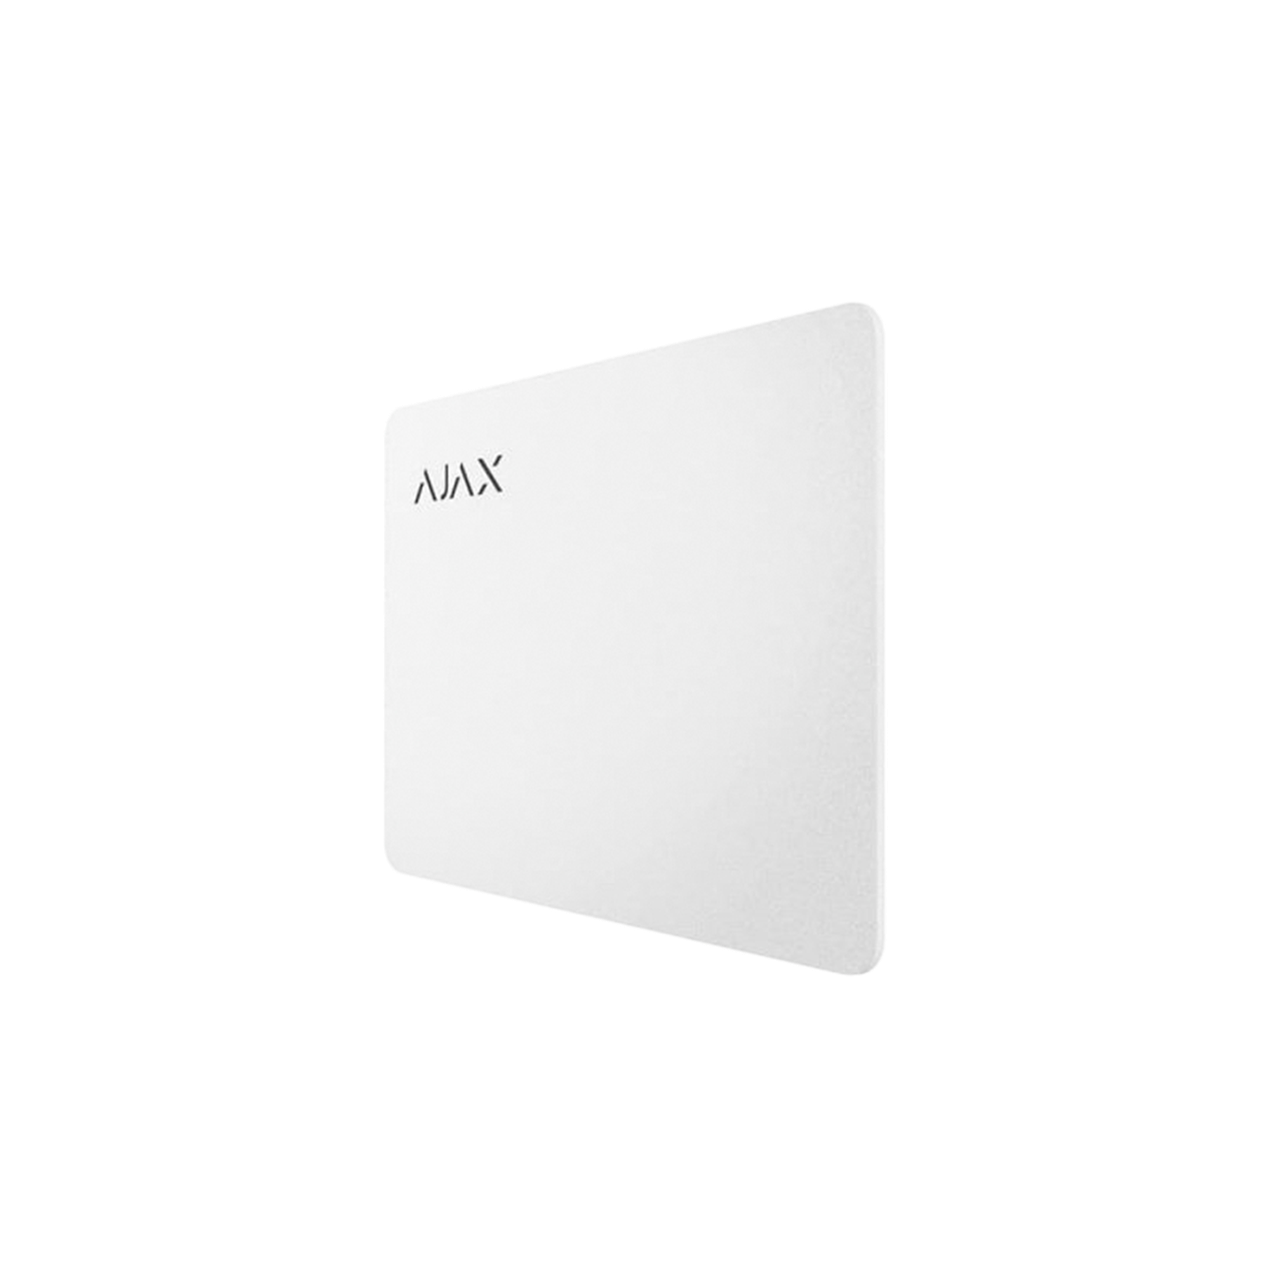 Захищена безконтактна карта для клавіатури AJAX Pass — 100 шт. (white)